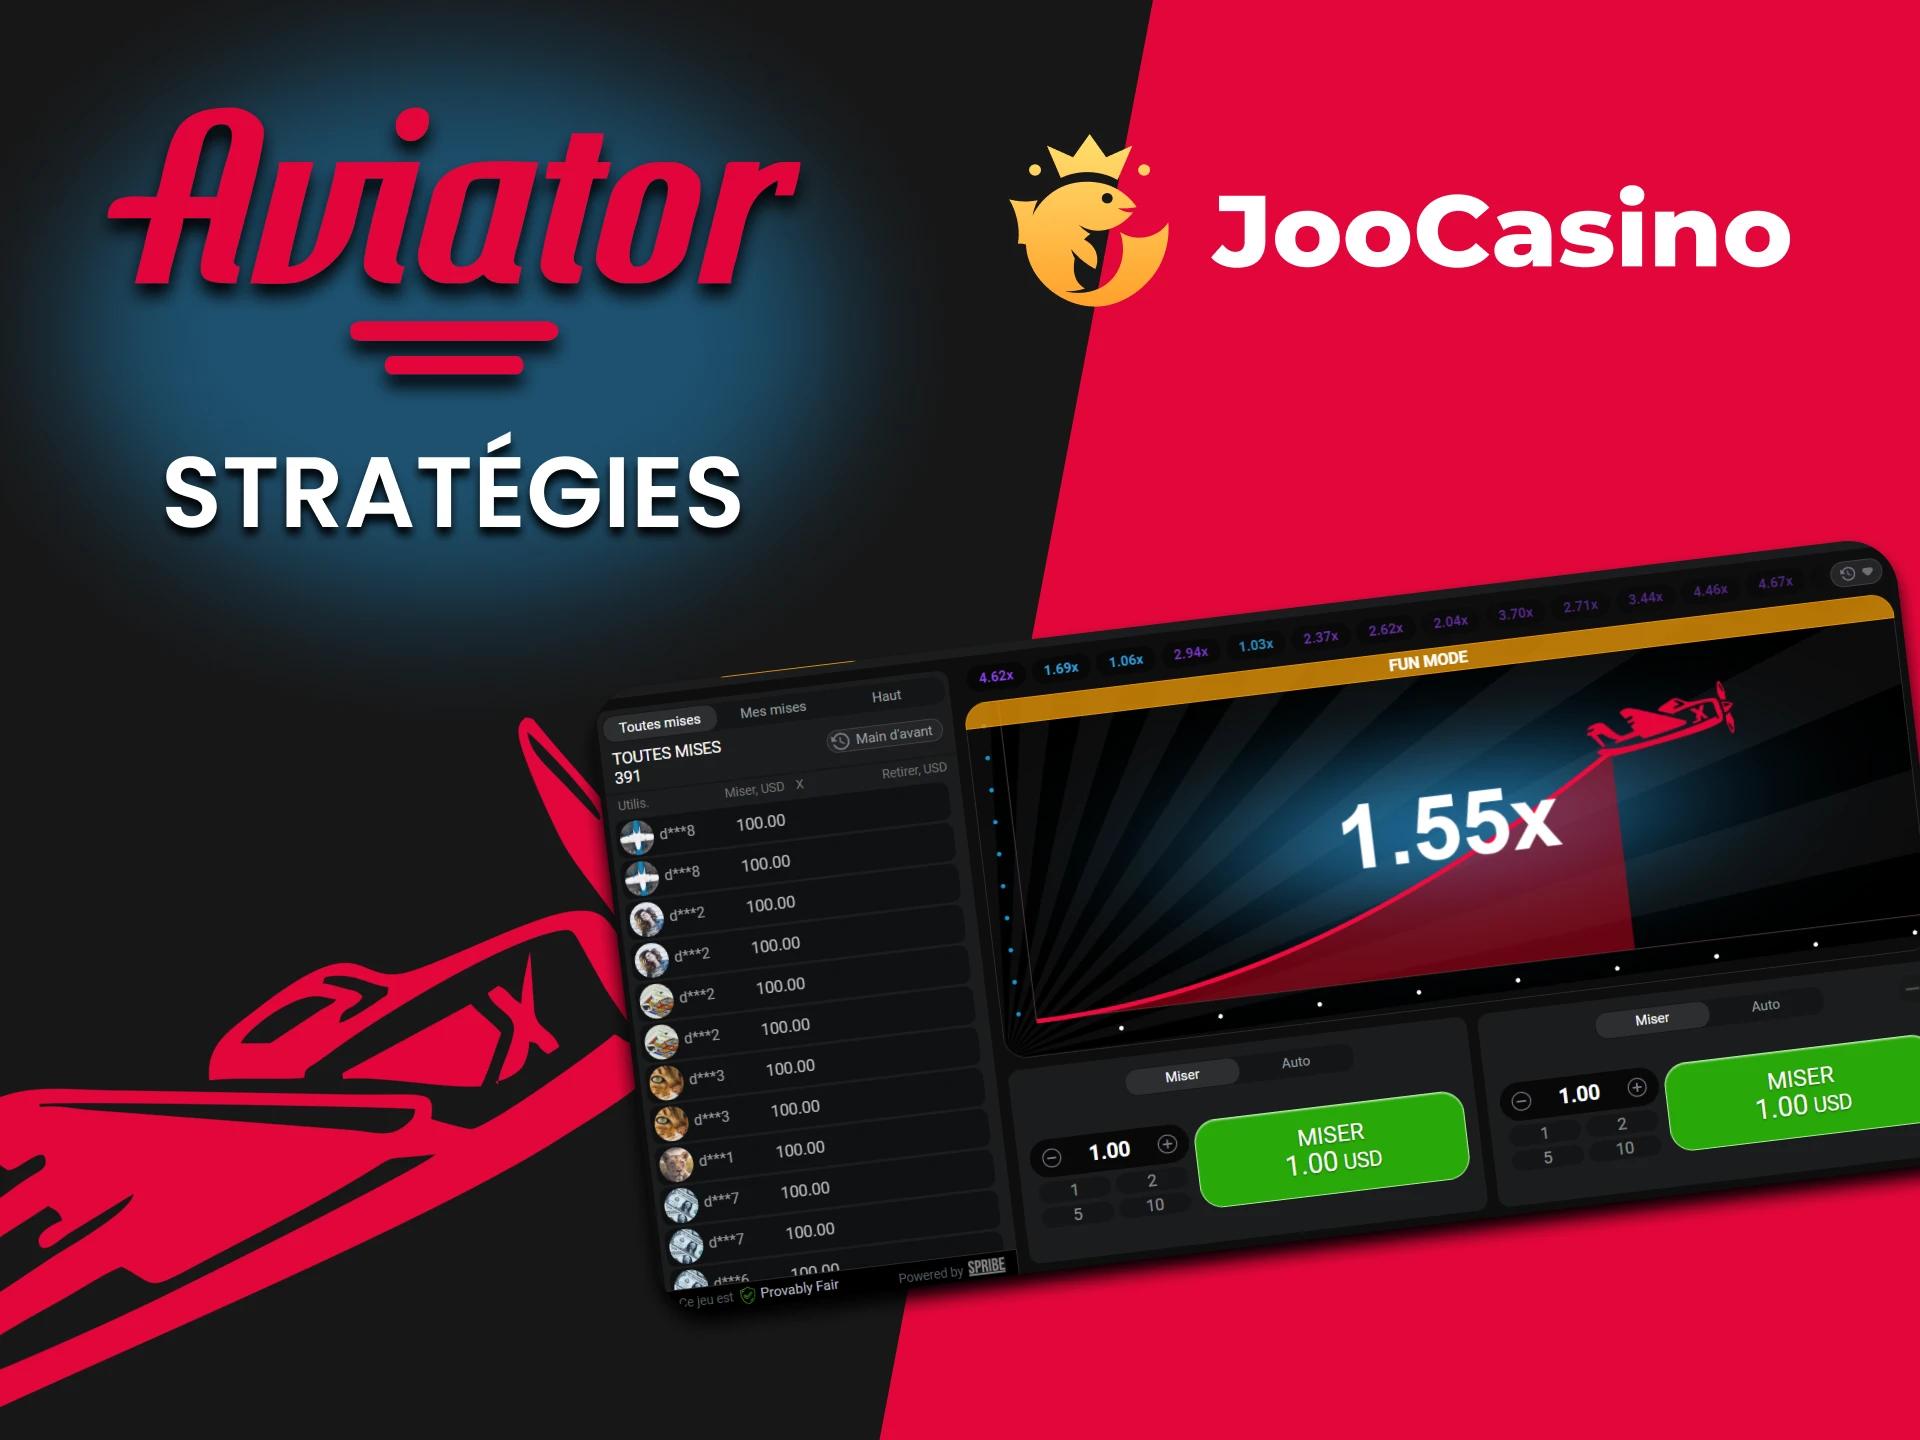 Apprenez des stratégies pour Aviator sur Joo Casino.